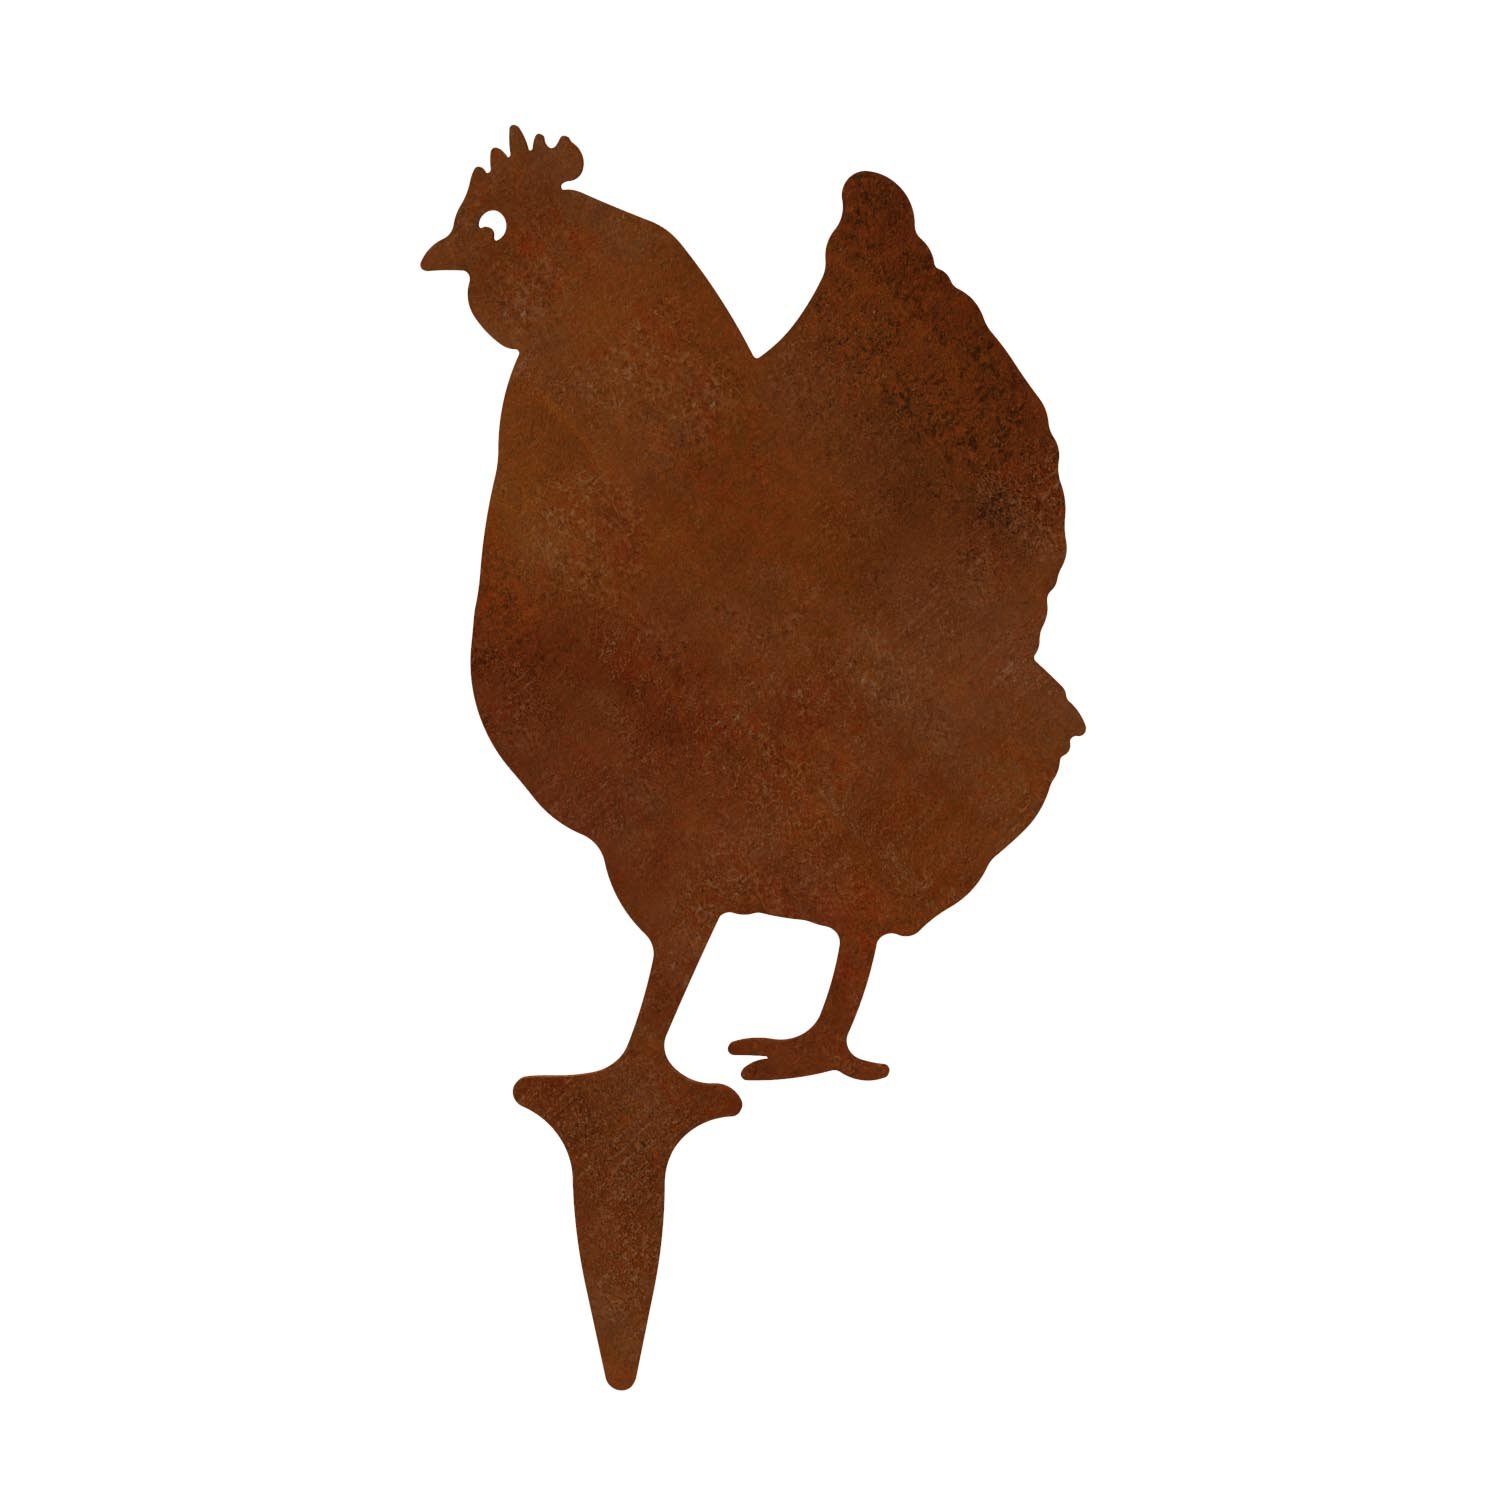 Gartenfigur Huhn aus Cortenstahl, Höhe 40 cm, steckbar